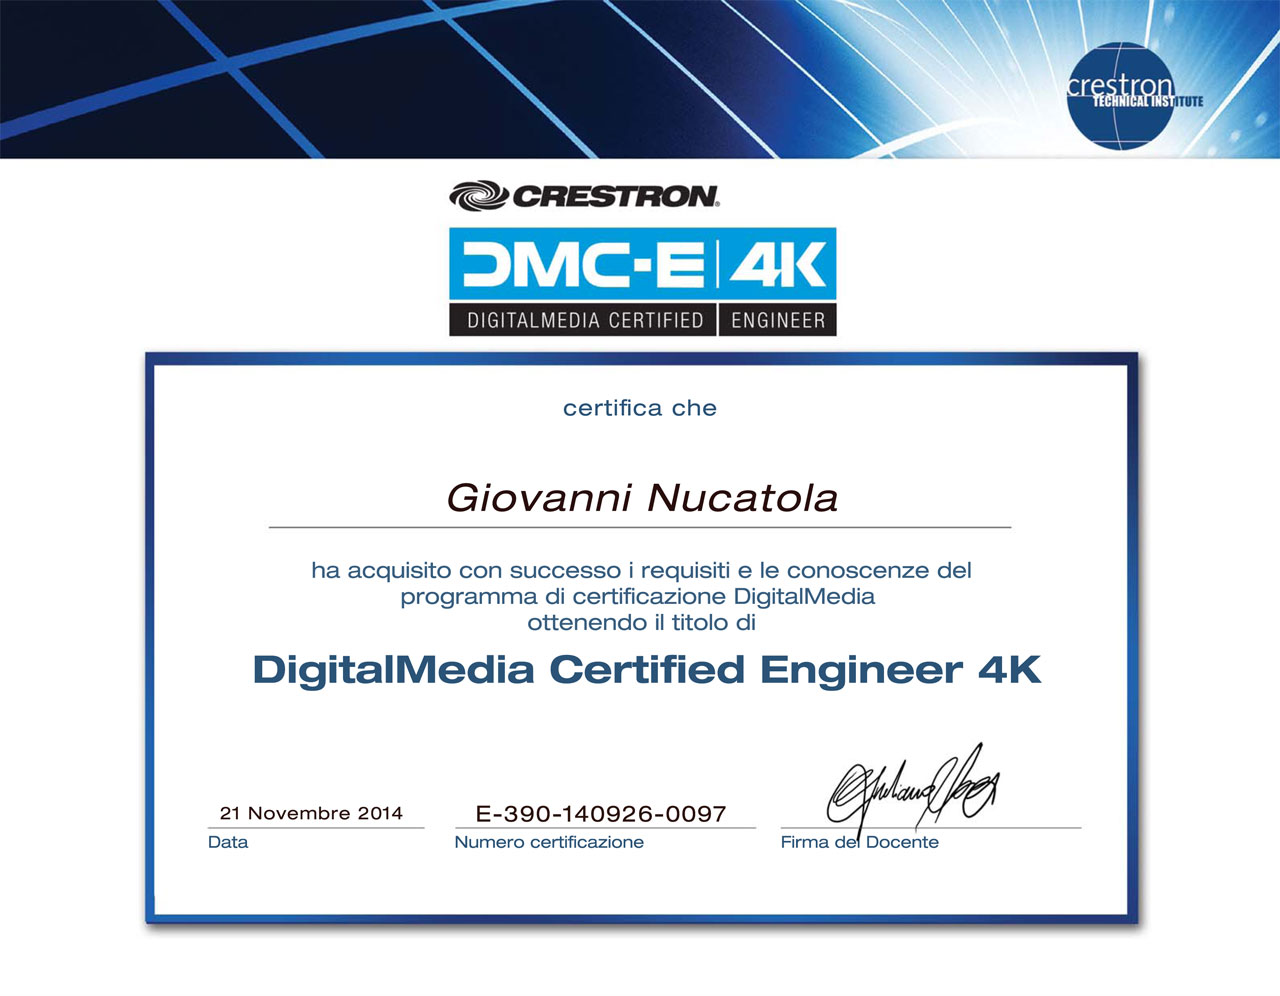 Giovanni Nucatola, G2M Sistemi, DMC-E 4K Crestron certified